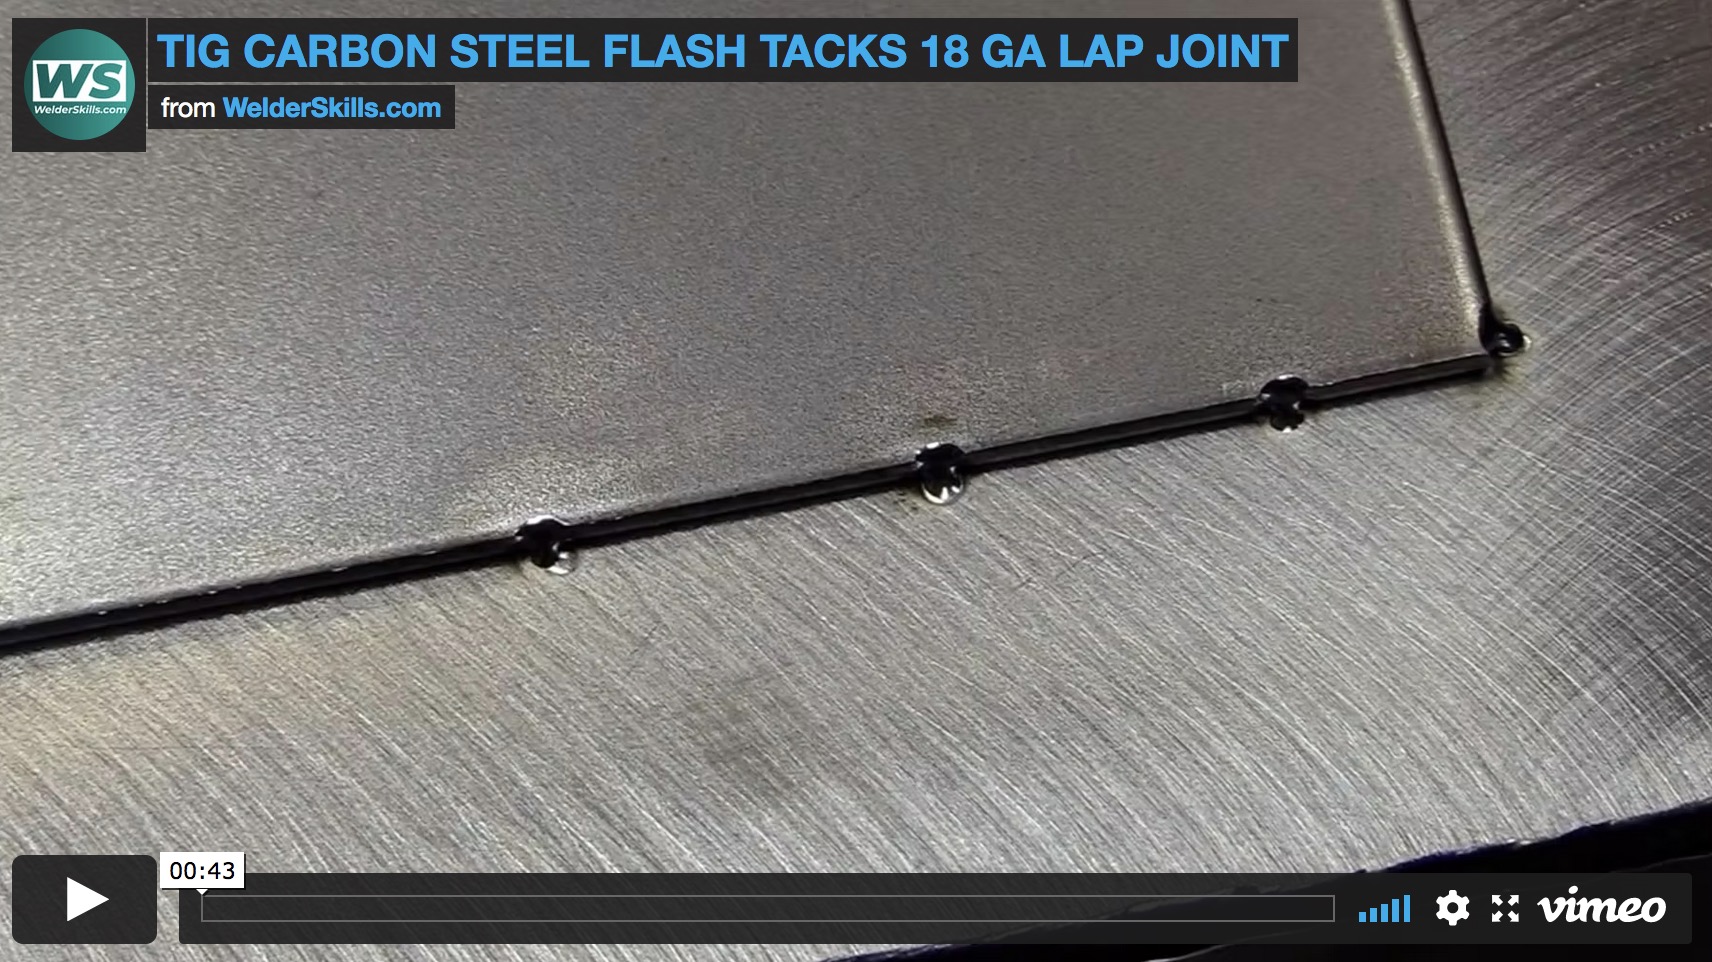 flash tacks 18 ga lap joint